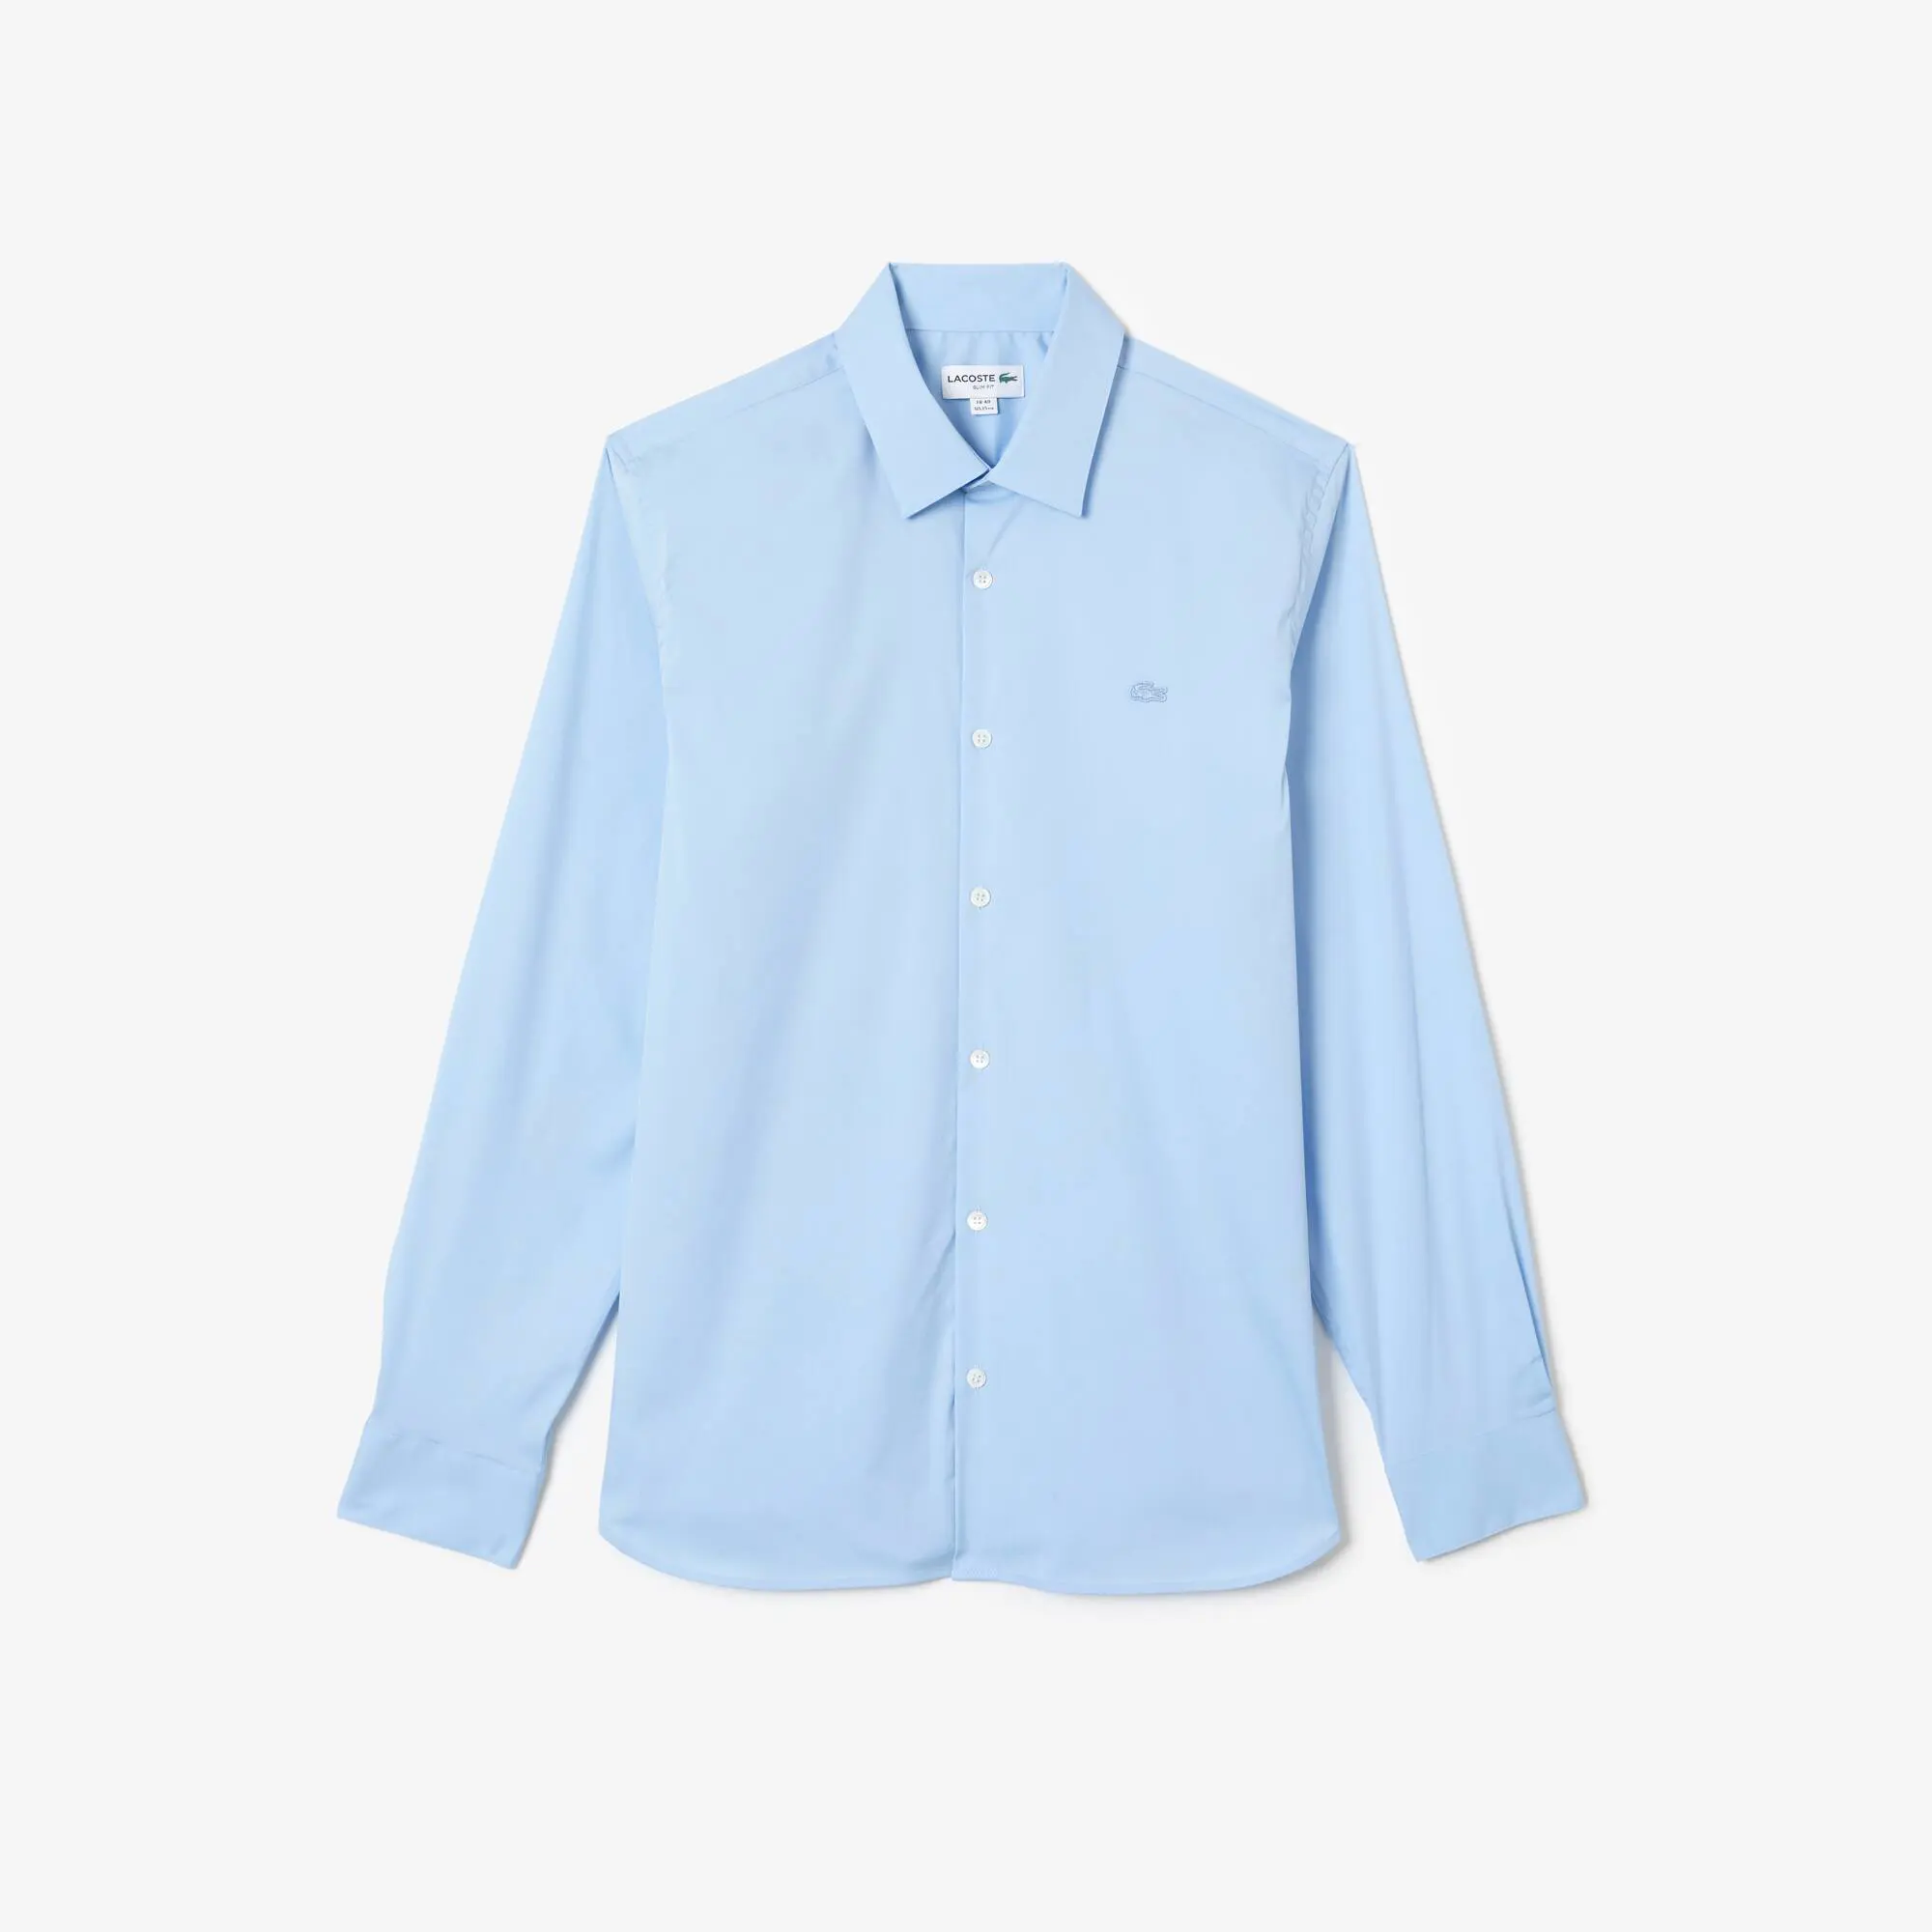 Lacoste Camisa de hombre Lacoste slim fit en popelín de algodón con cuello francés. 2